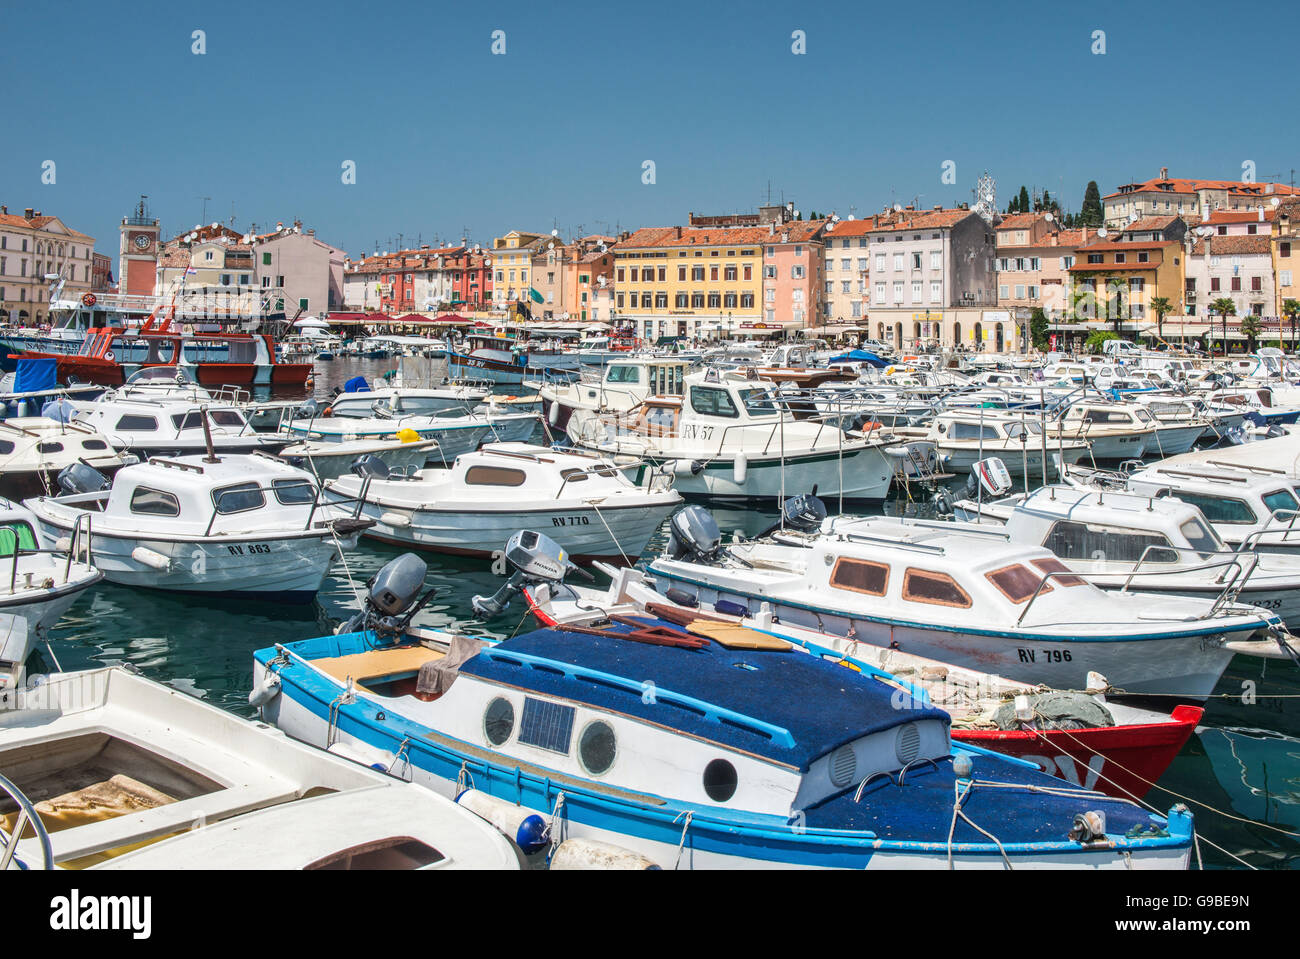 La jolie ville de Rovinj ou Rovigno, sur la mer Adriatique en Croatie, montrant le port, bateaux amarrés et coloré Banque D'Images